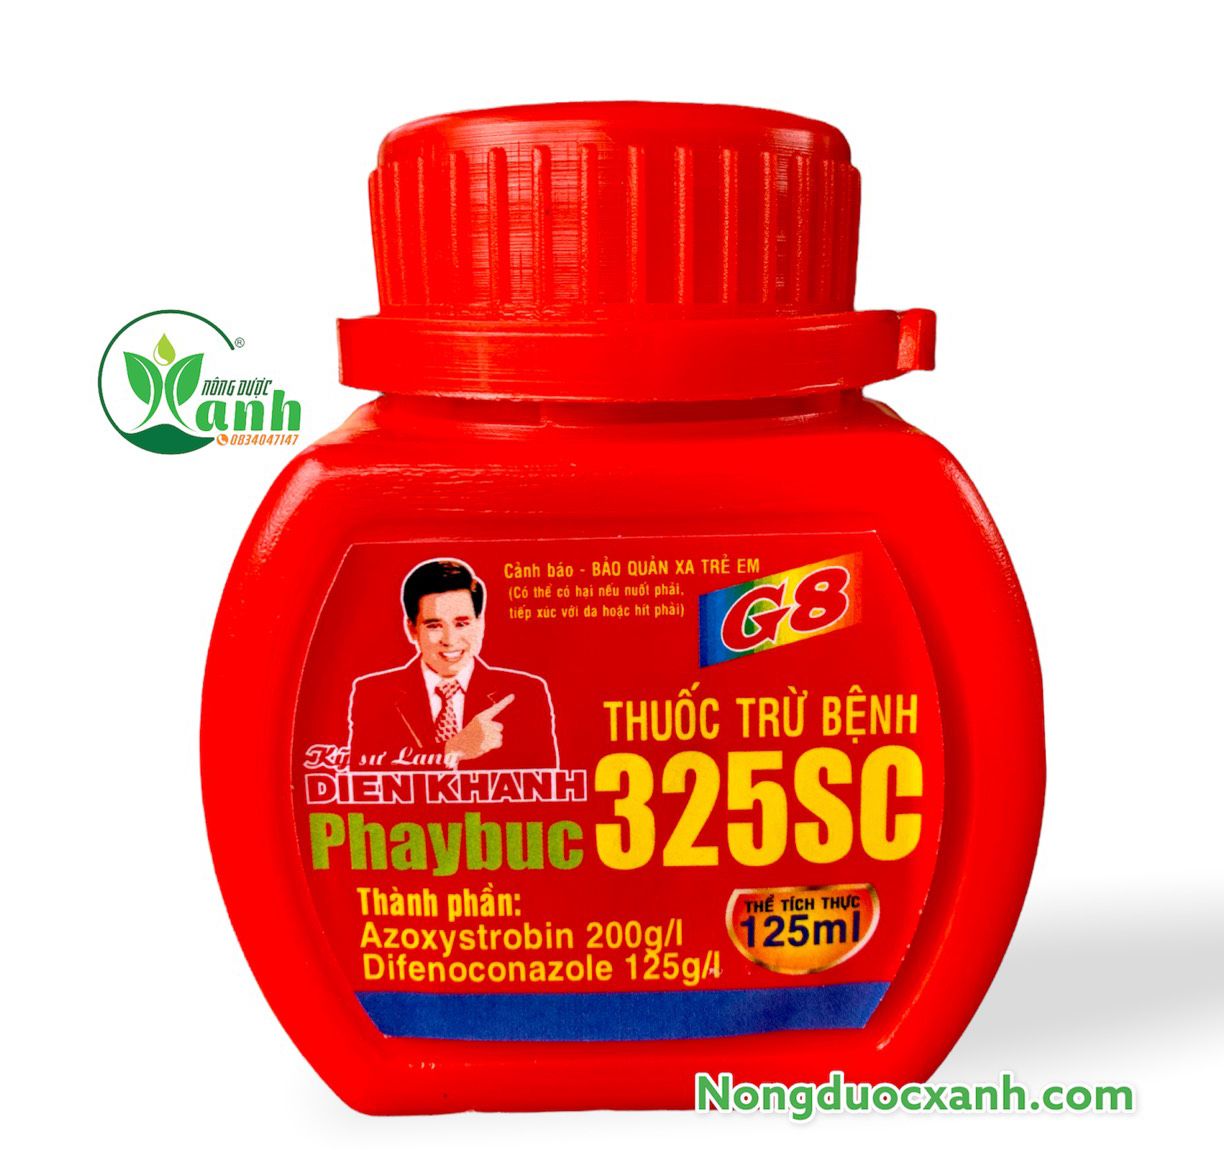  Thuốc Trừ bệnh Phaybuc 325SC  - Kỹ Sư Lang 